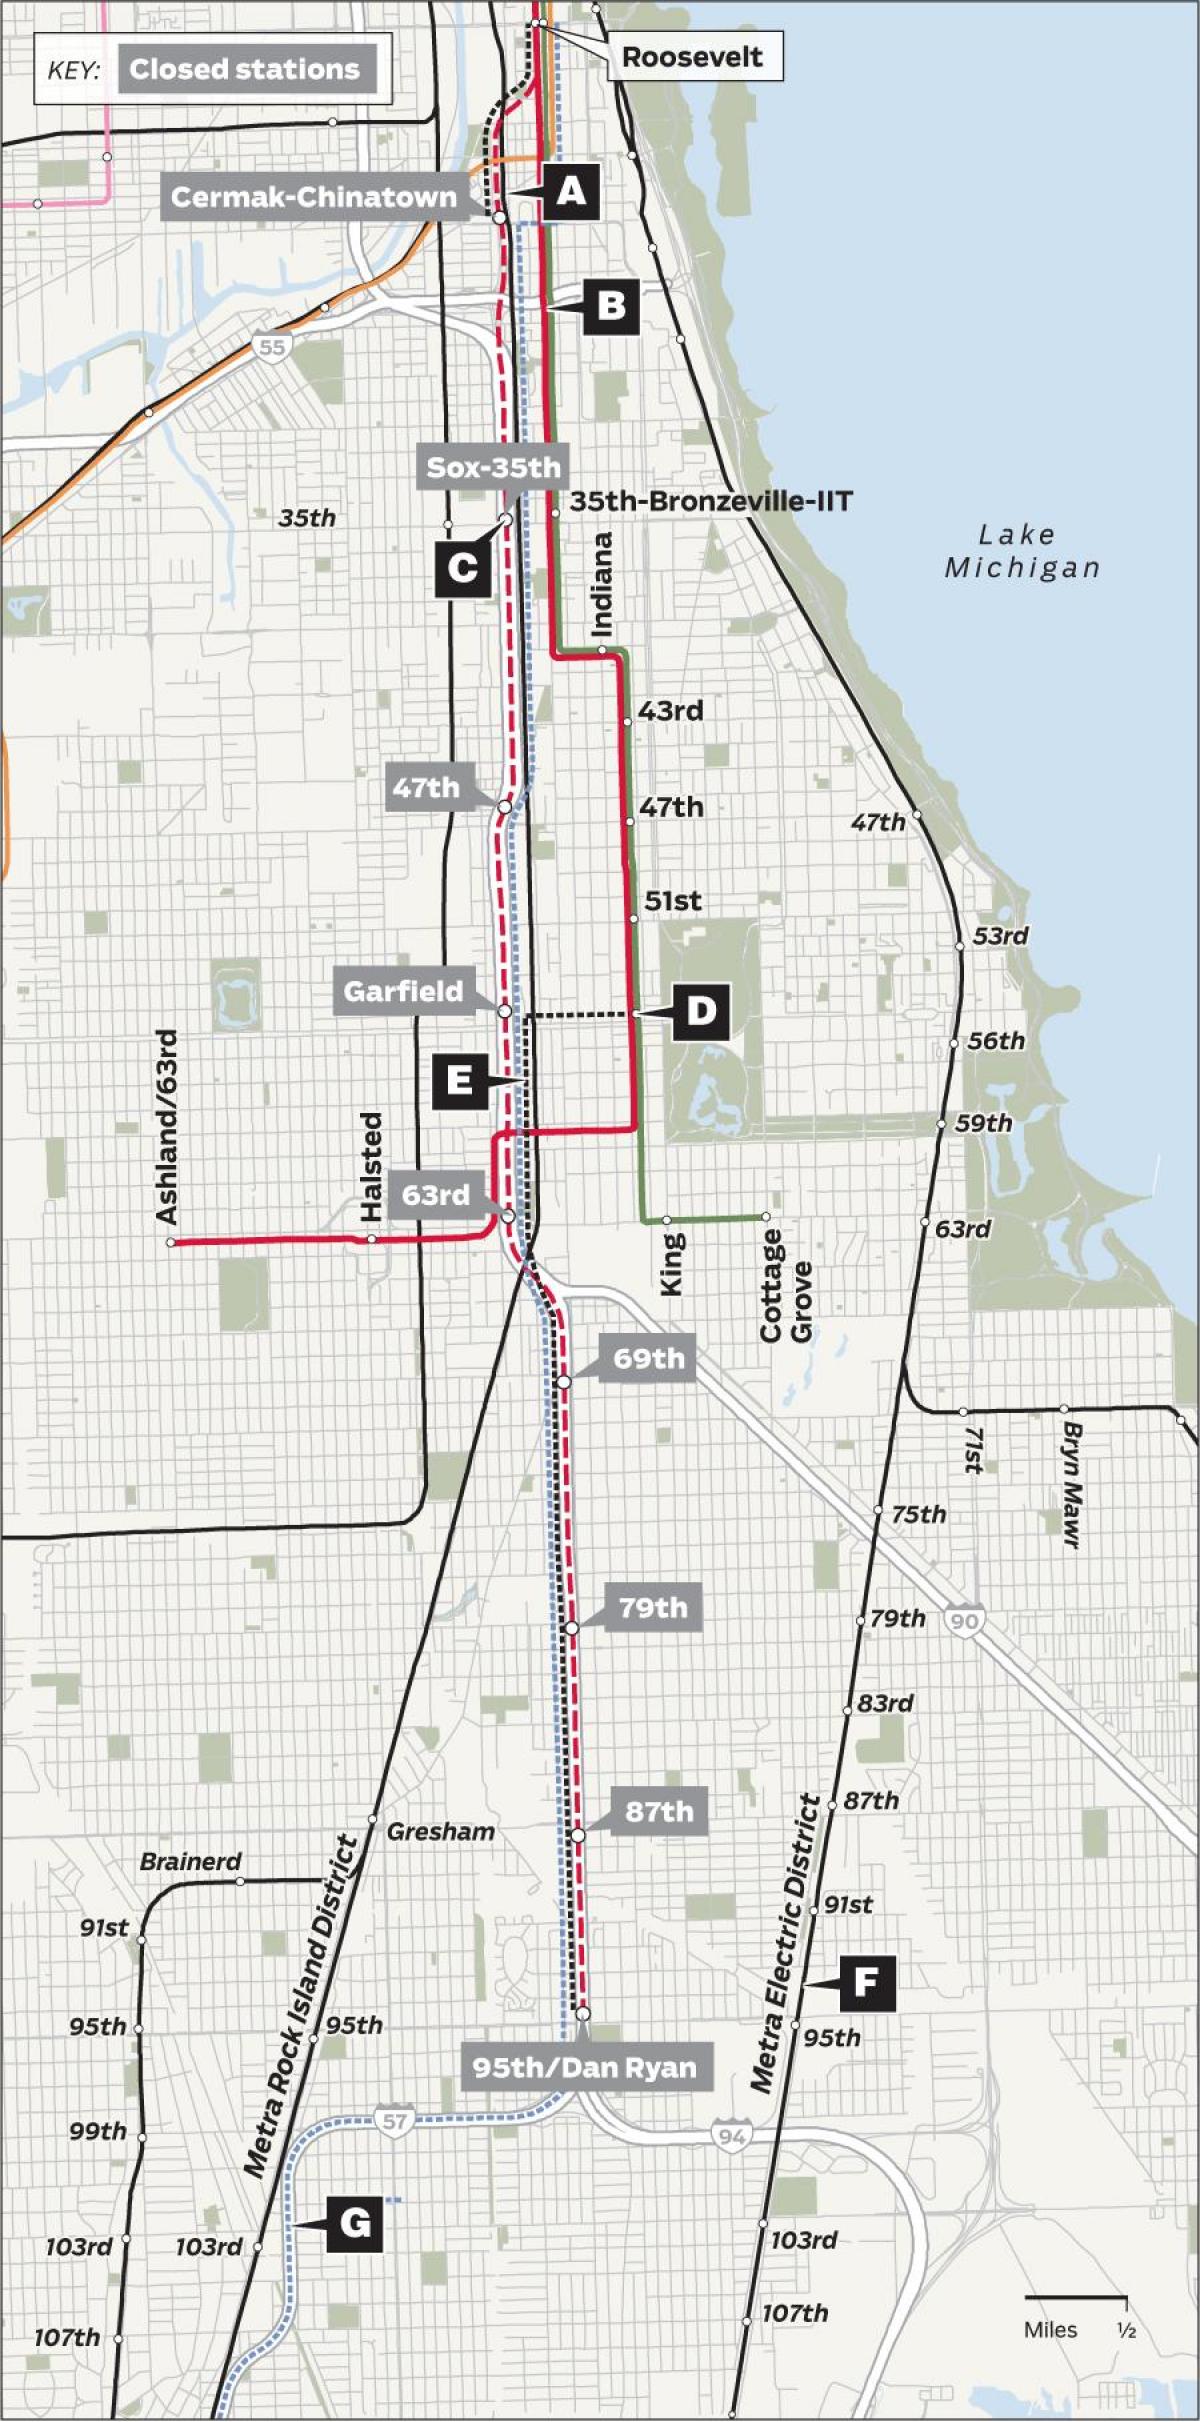 redline Chicago kart